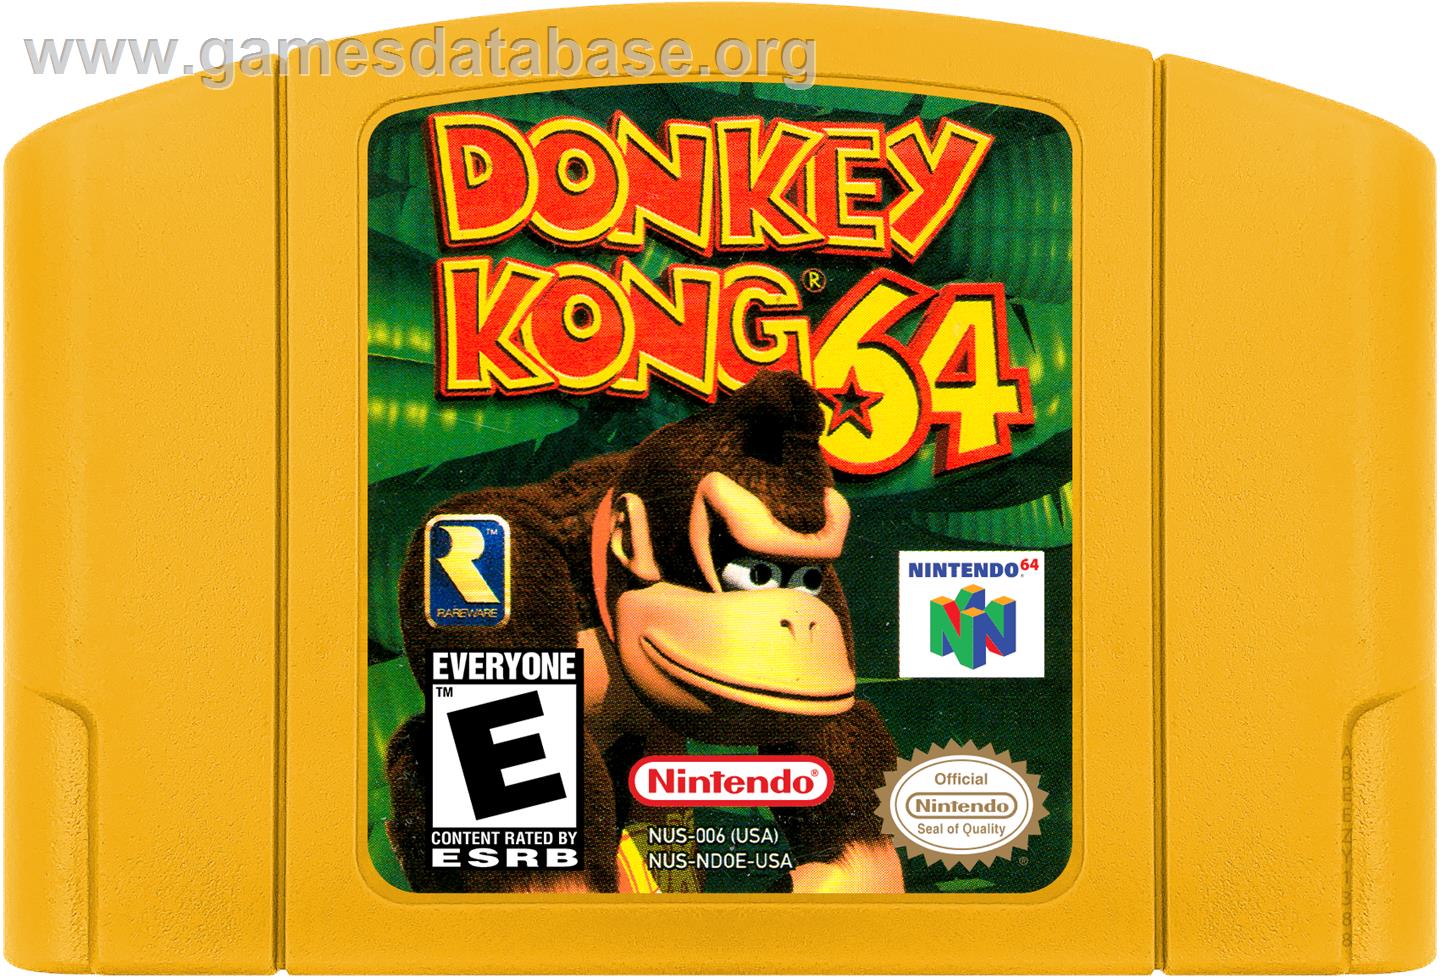 Donkey Kong 64 - Nintendo N64 - Artwork - Cartridge